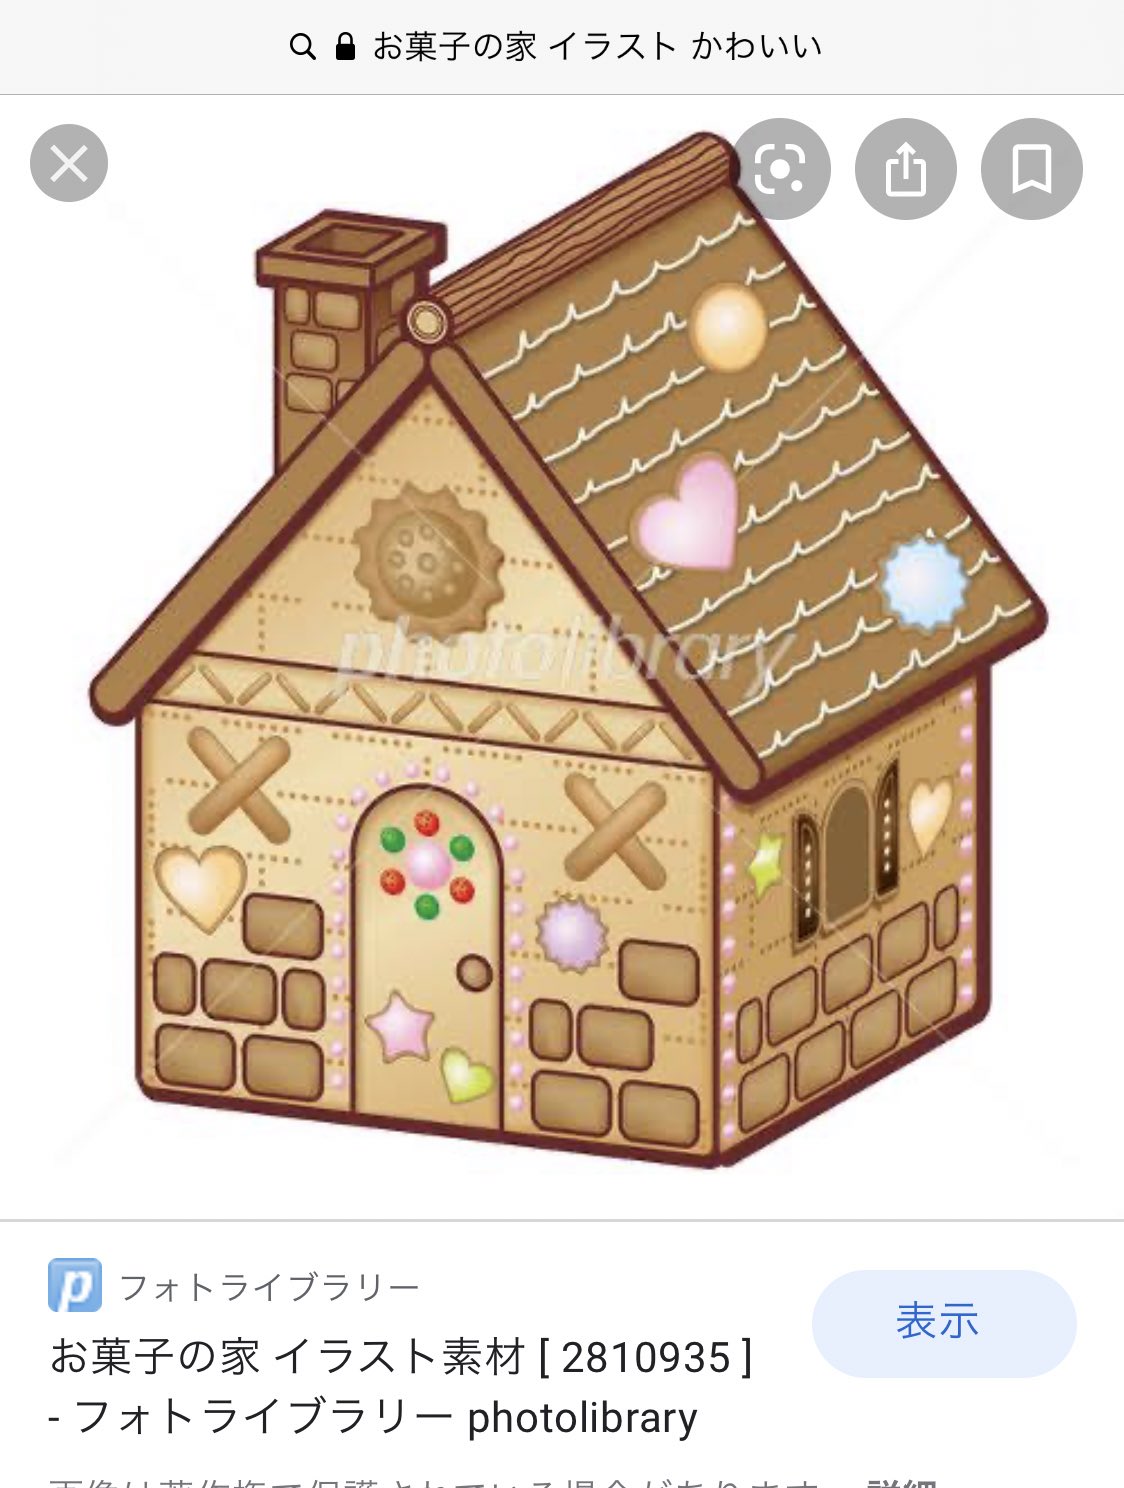 しめろでぃ 在 Twitter 上 お菓子の家も お菓子の家 イラスト かわいい で検索してからアレンジ加えてるのまじで可愛いな T Co Xpbobgem1p Twitter